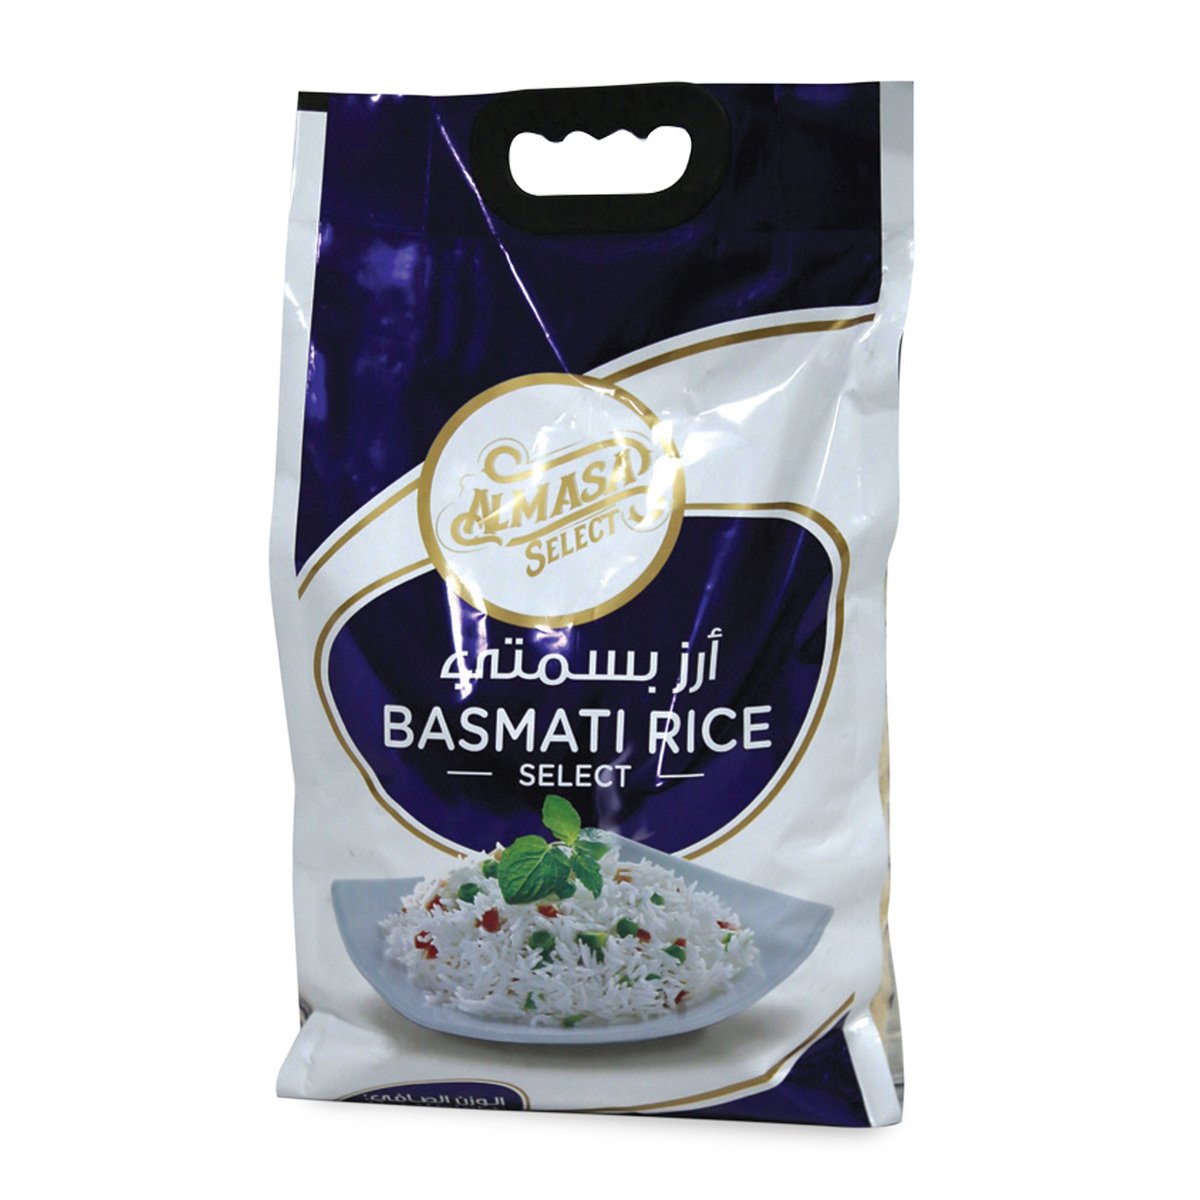 Almasa Select Basmati Rice 5 kg